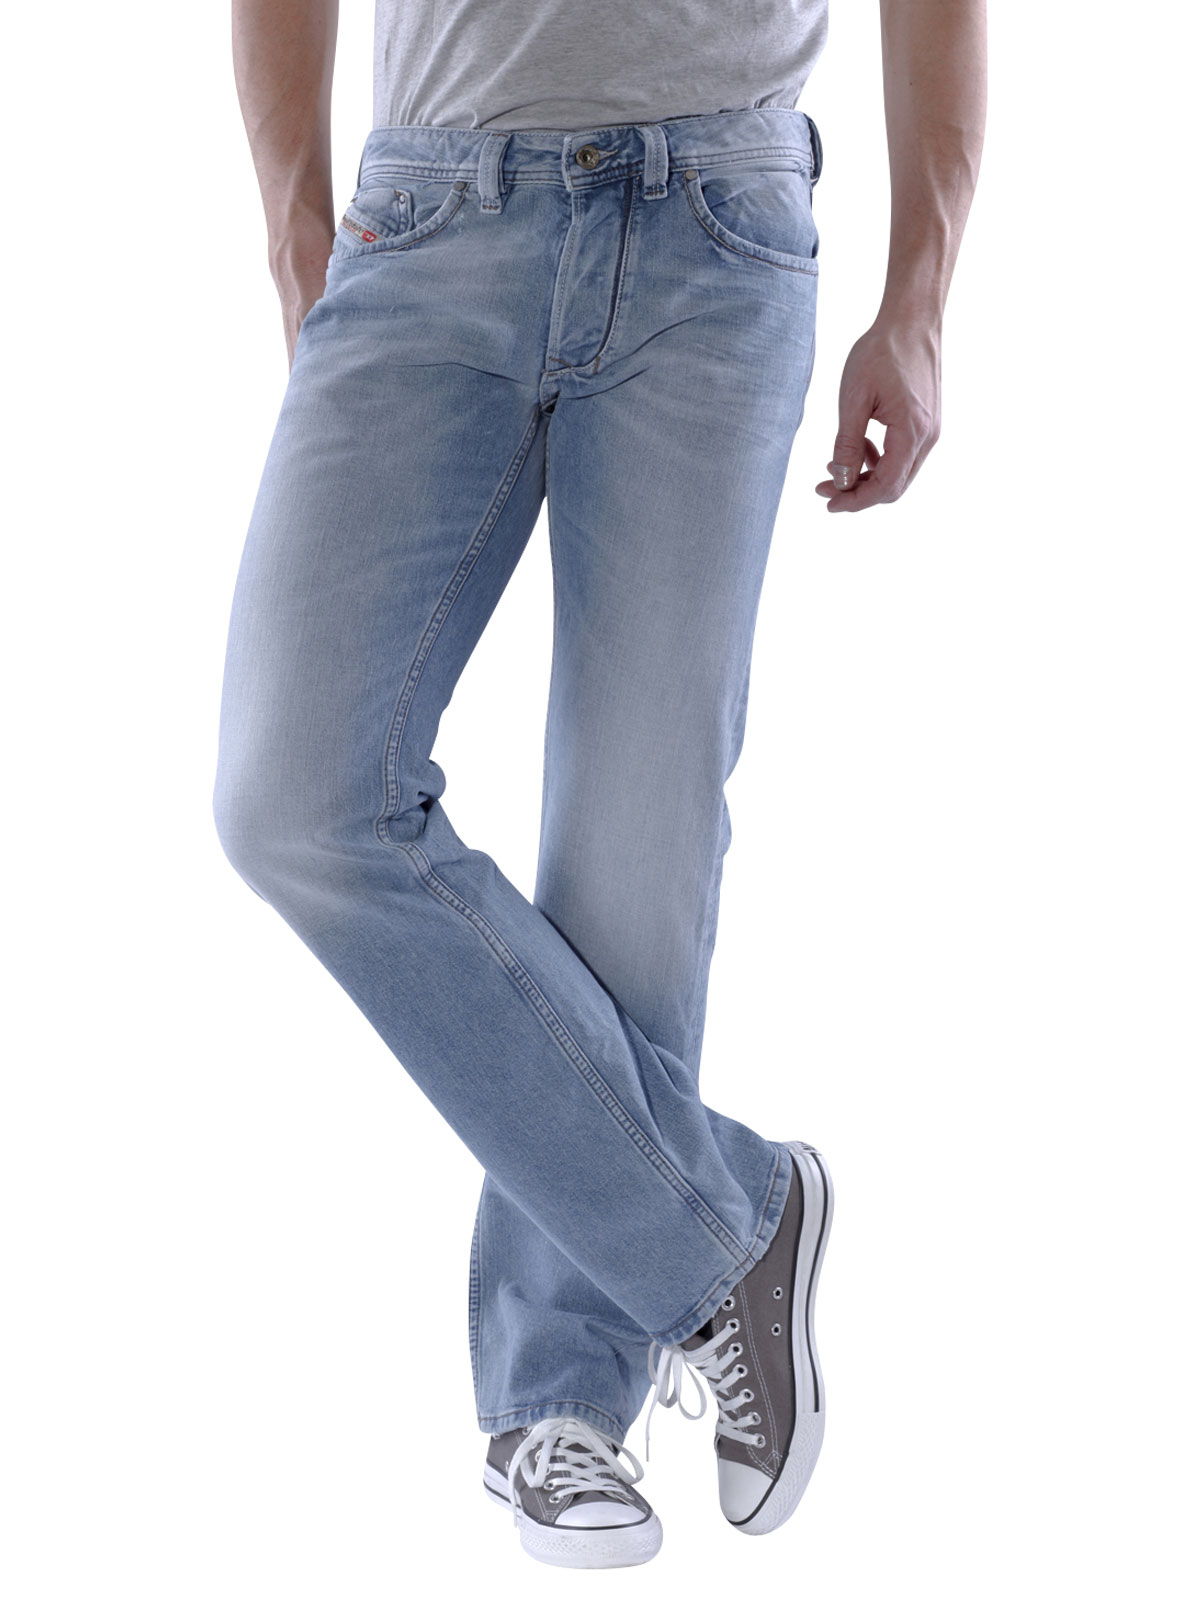 Diesel Larkee Jeans Straight light blue - Diesel Men's Jeans | McJeans ...